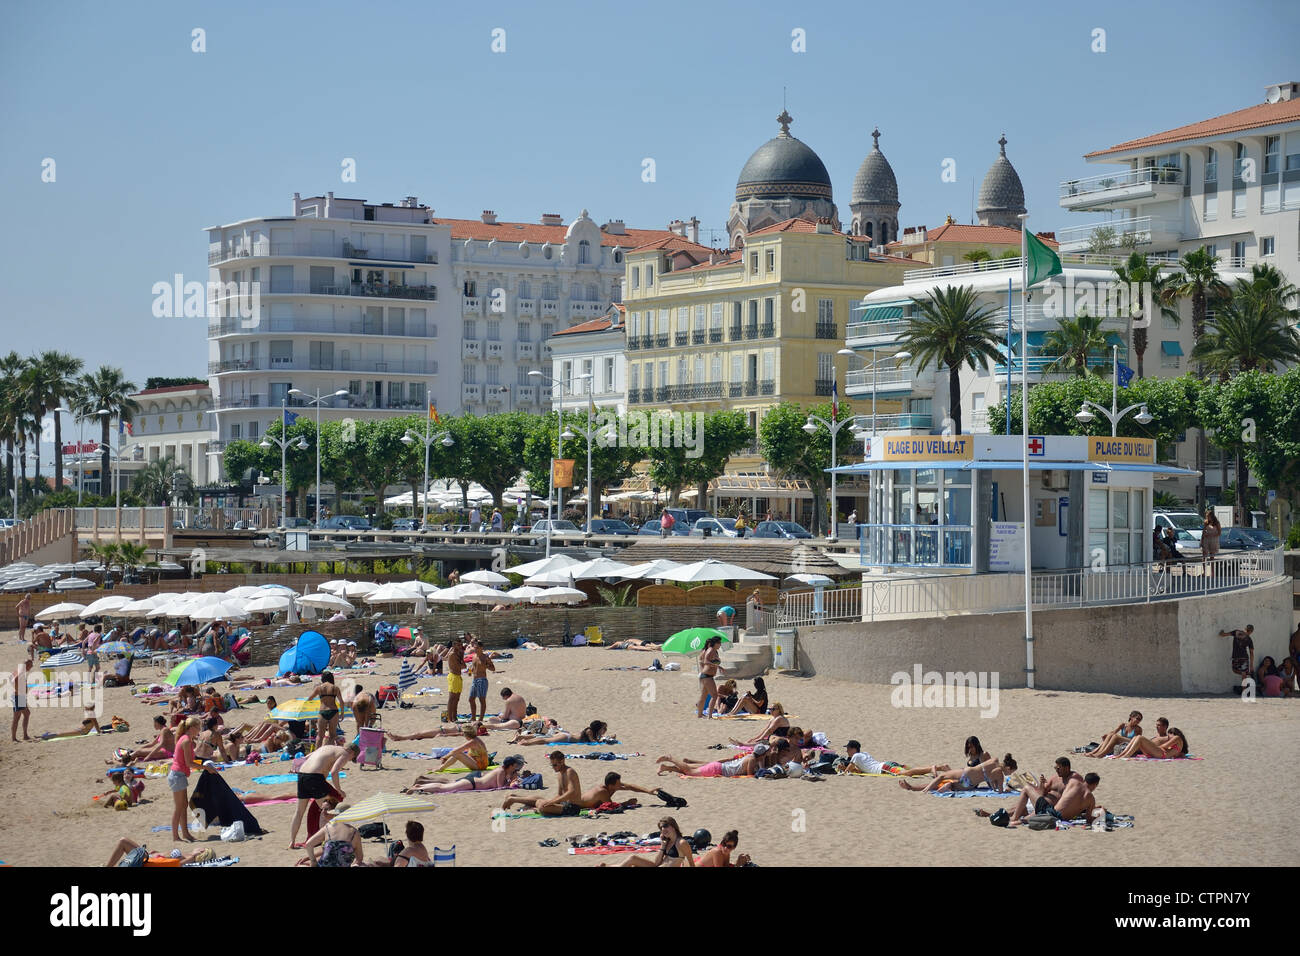 Plage et vue front de mer, Saint-Raphaël, Côte d'Azur, Var, Provence-Alpes-Côte d'Azur, France Banque D'Images